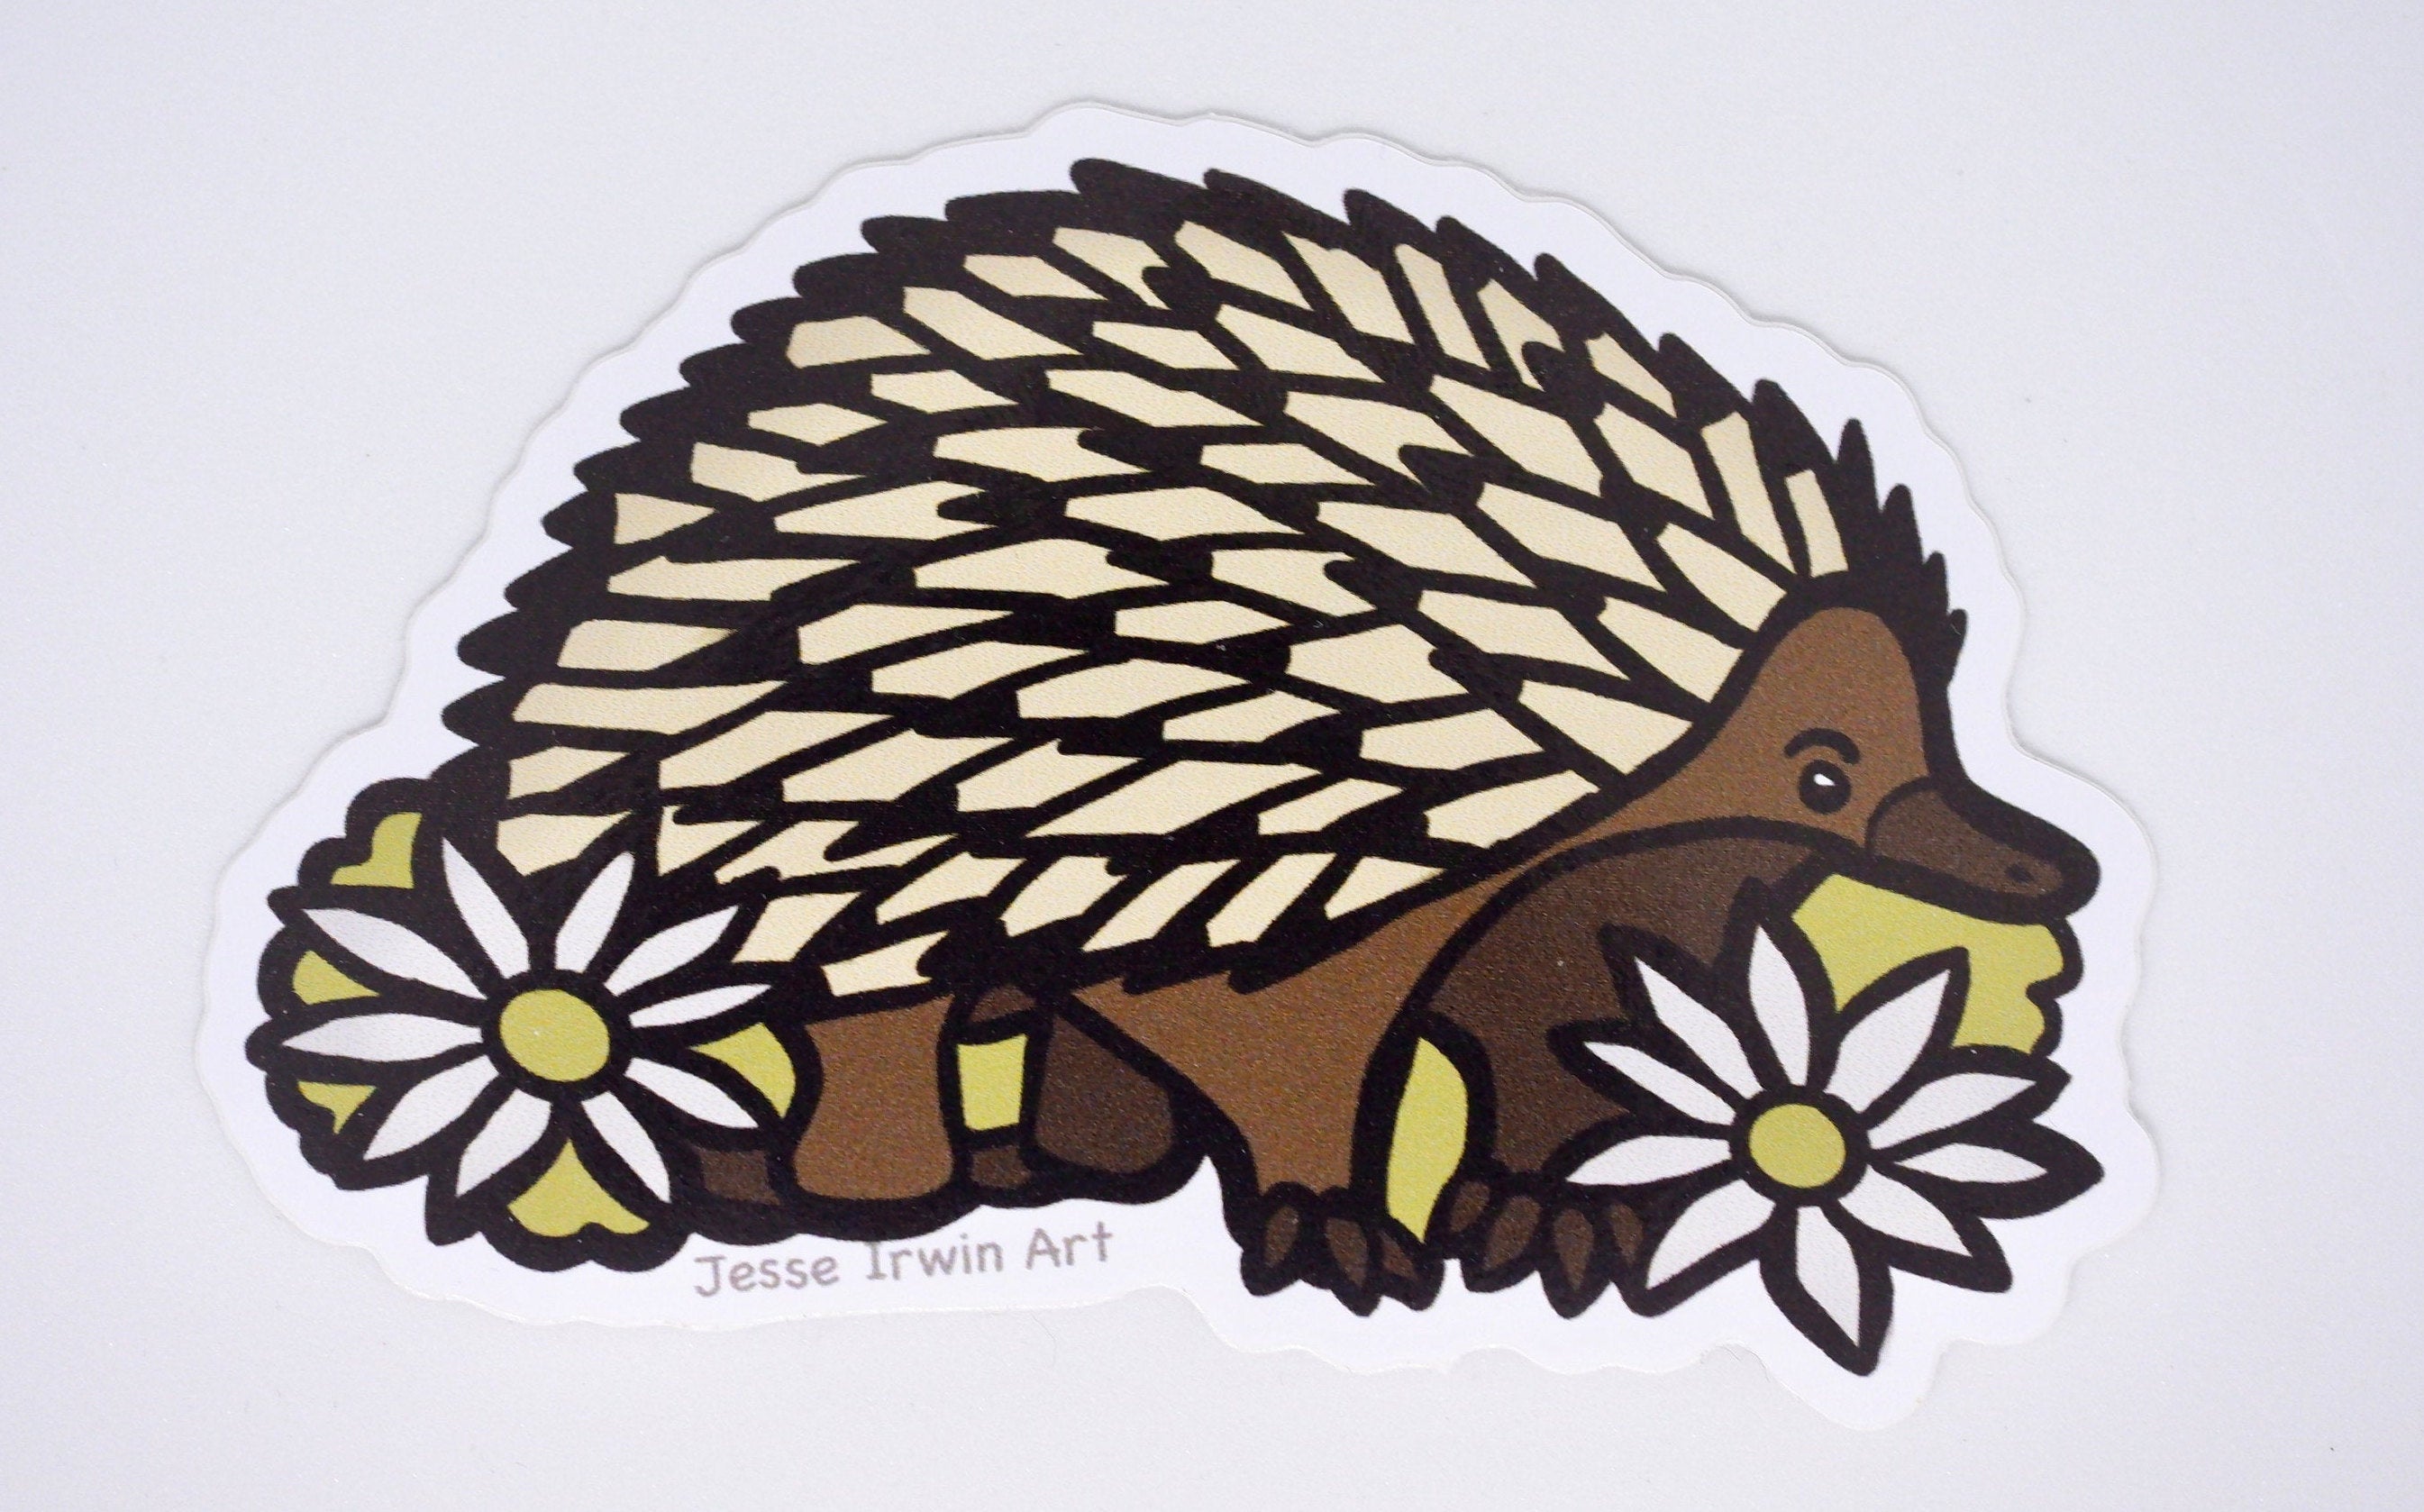 Echidna and Flannel Flower Vinyl Sticker - Australian Animals and Flowers - Die Cut Vinyl Sticker - Laptop Decal